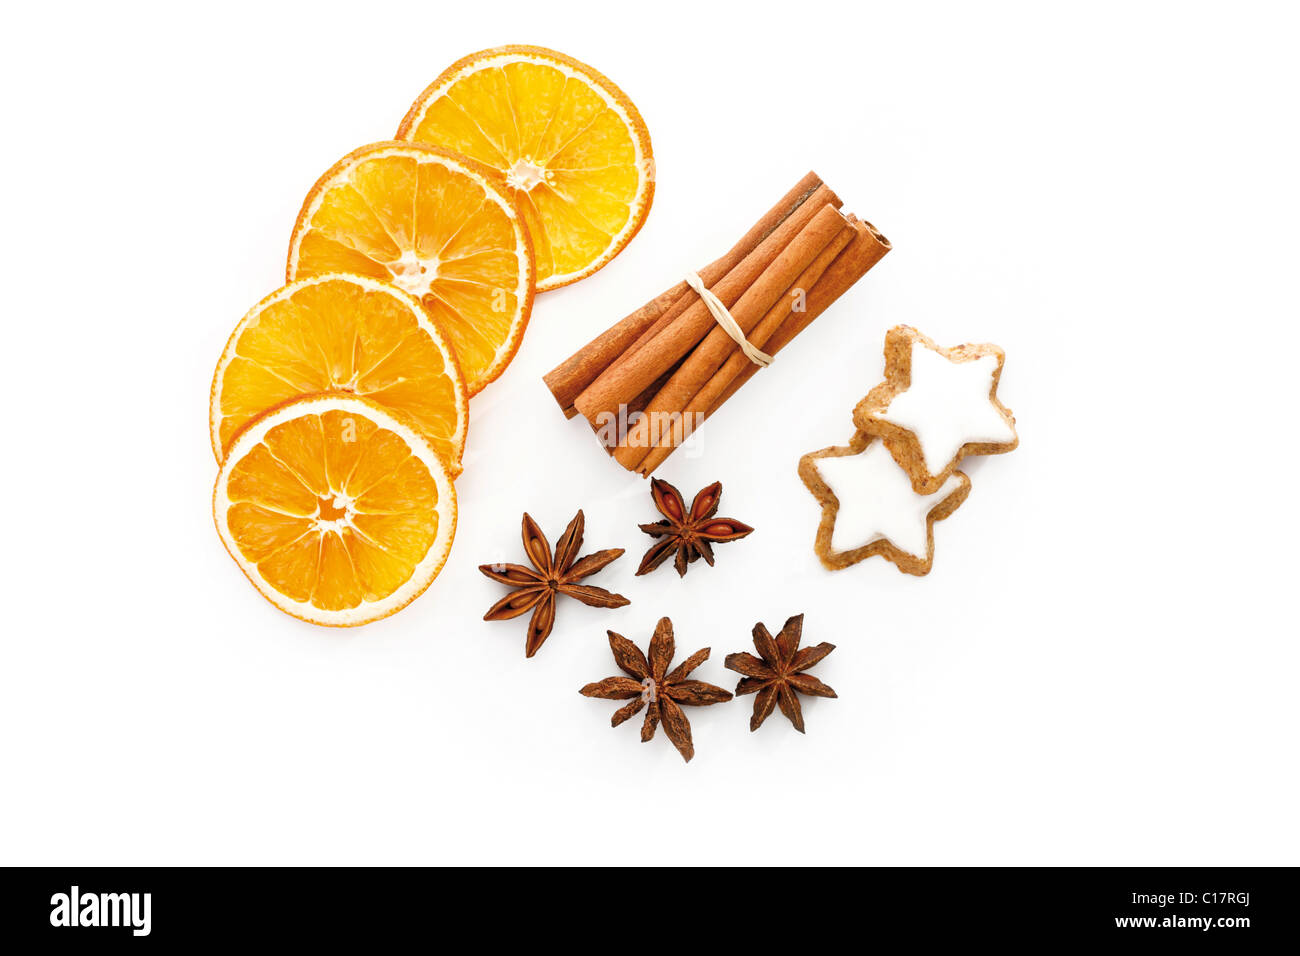 Las rodajas de naranja secos, palitos de canela, anís y canela galletas en forma de estrella Foto de stock